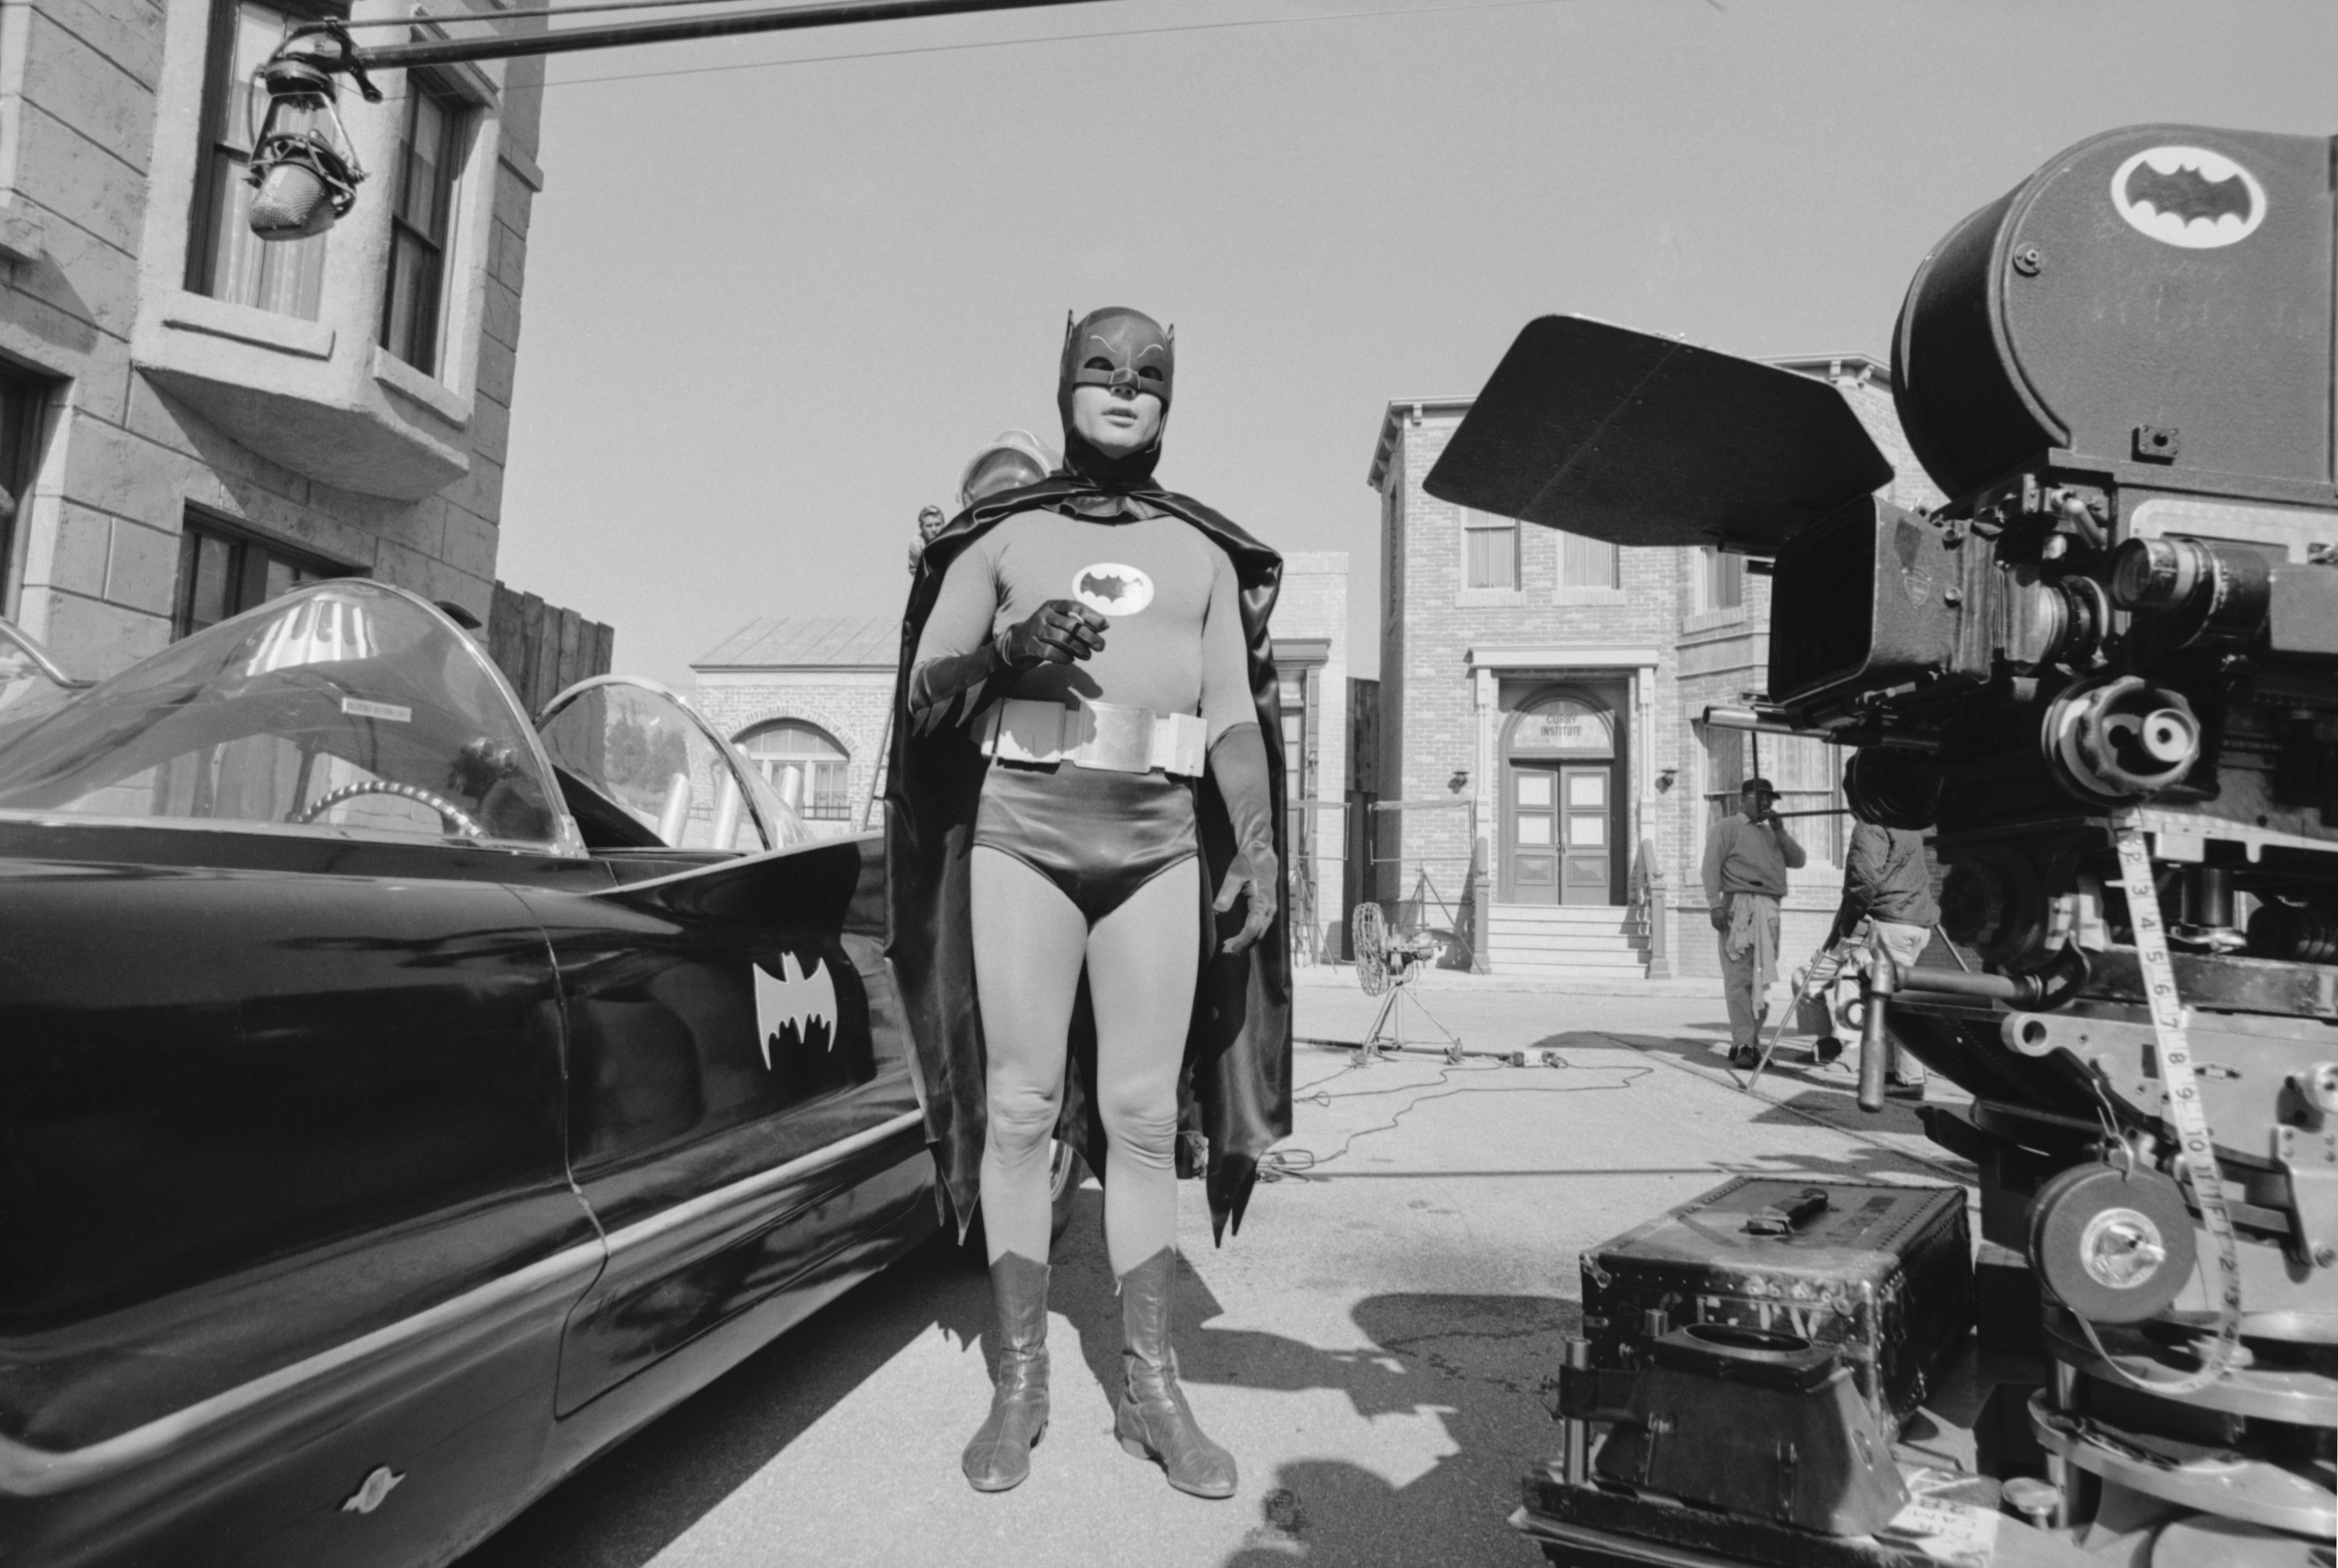 45 Batman Set Photos - Behind-the-Scenes Batman Photos